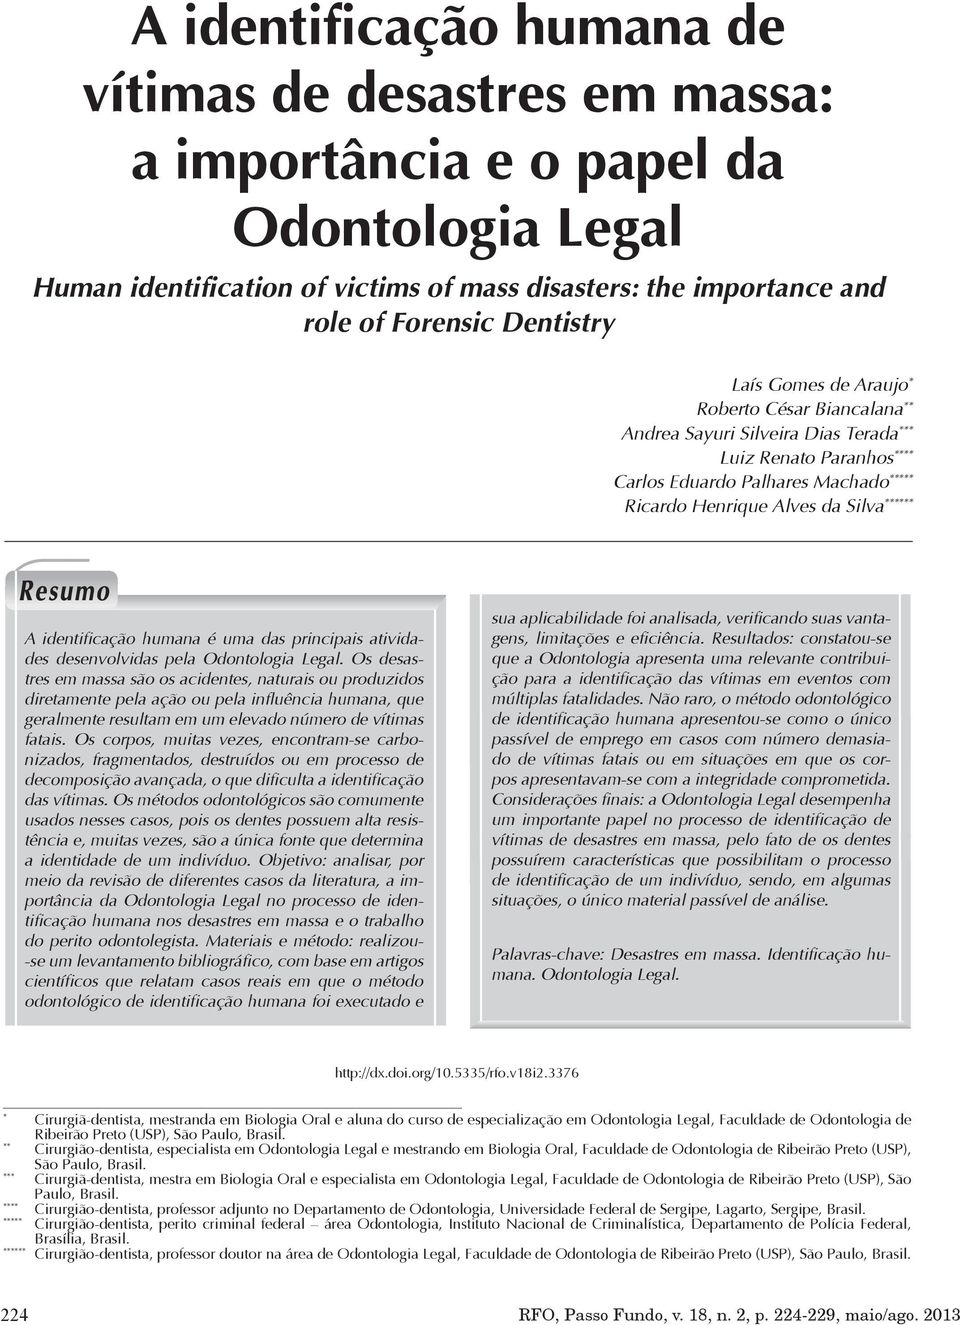 identificação humana é uma das principais atividades desenvolvidas pela Odontologia Legal.